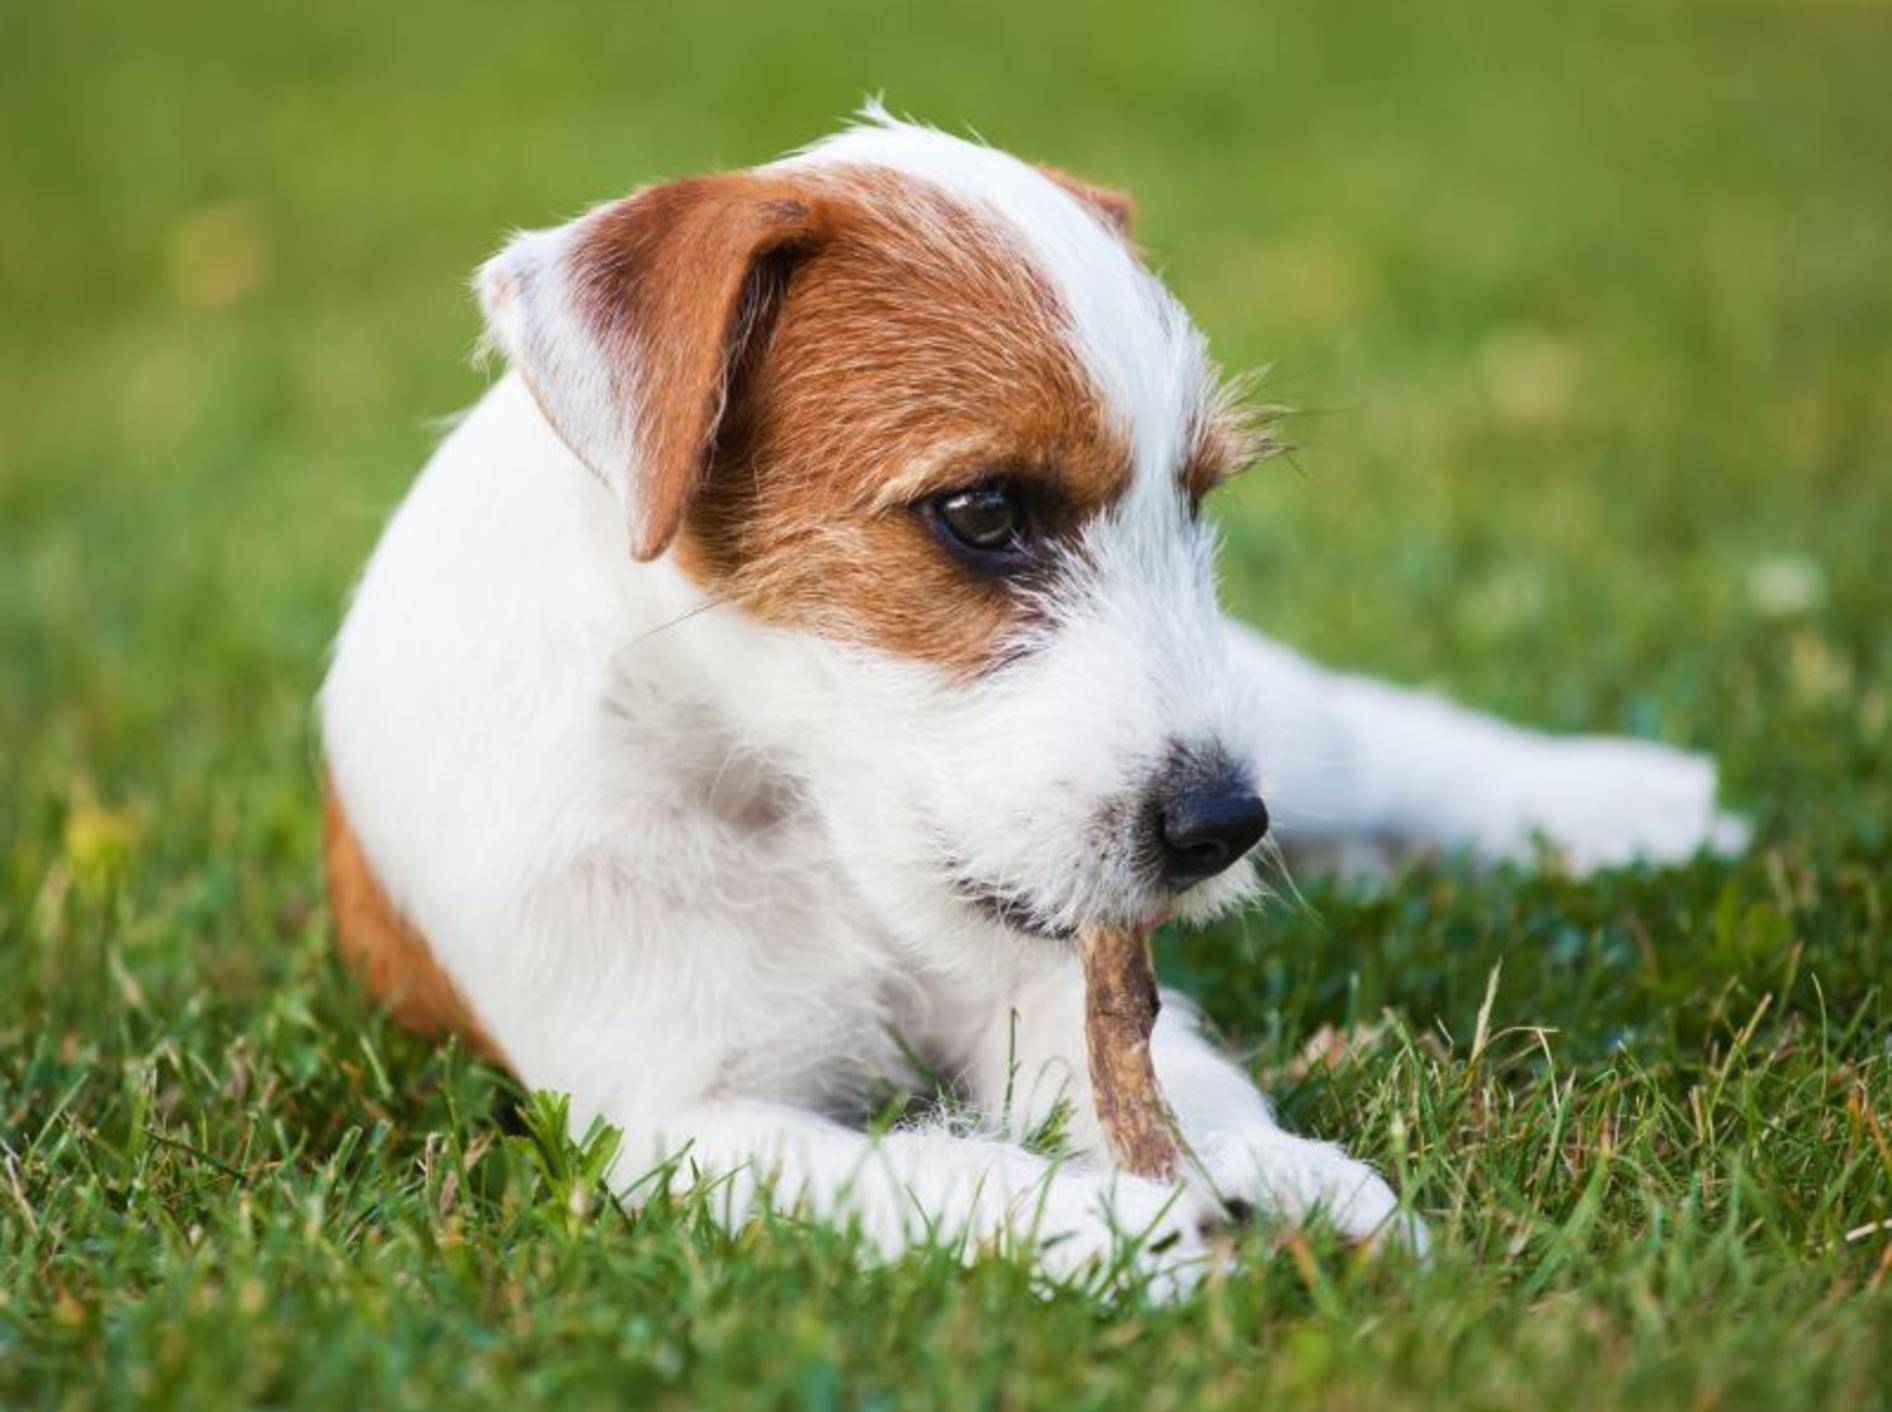 Da freut sich der Hund: Ein Leckerli für zwischendurch kommt immer gut an! — Bild: Shutterstock / Christian Mueller